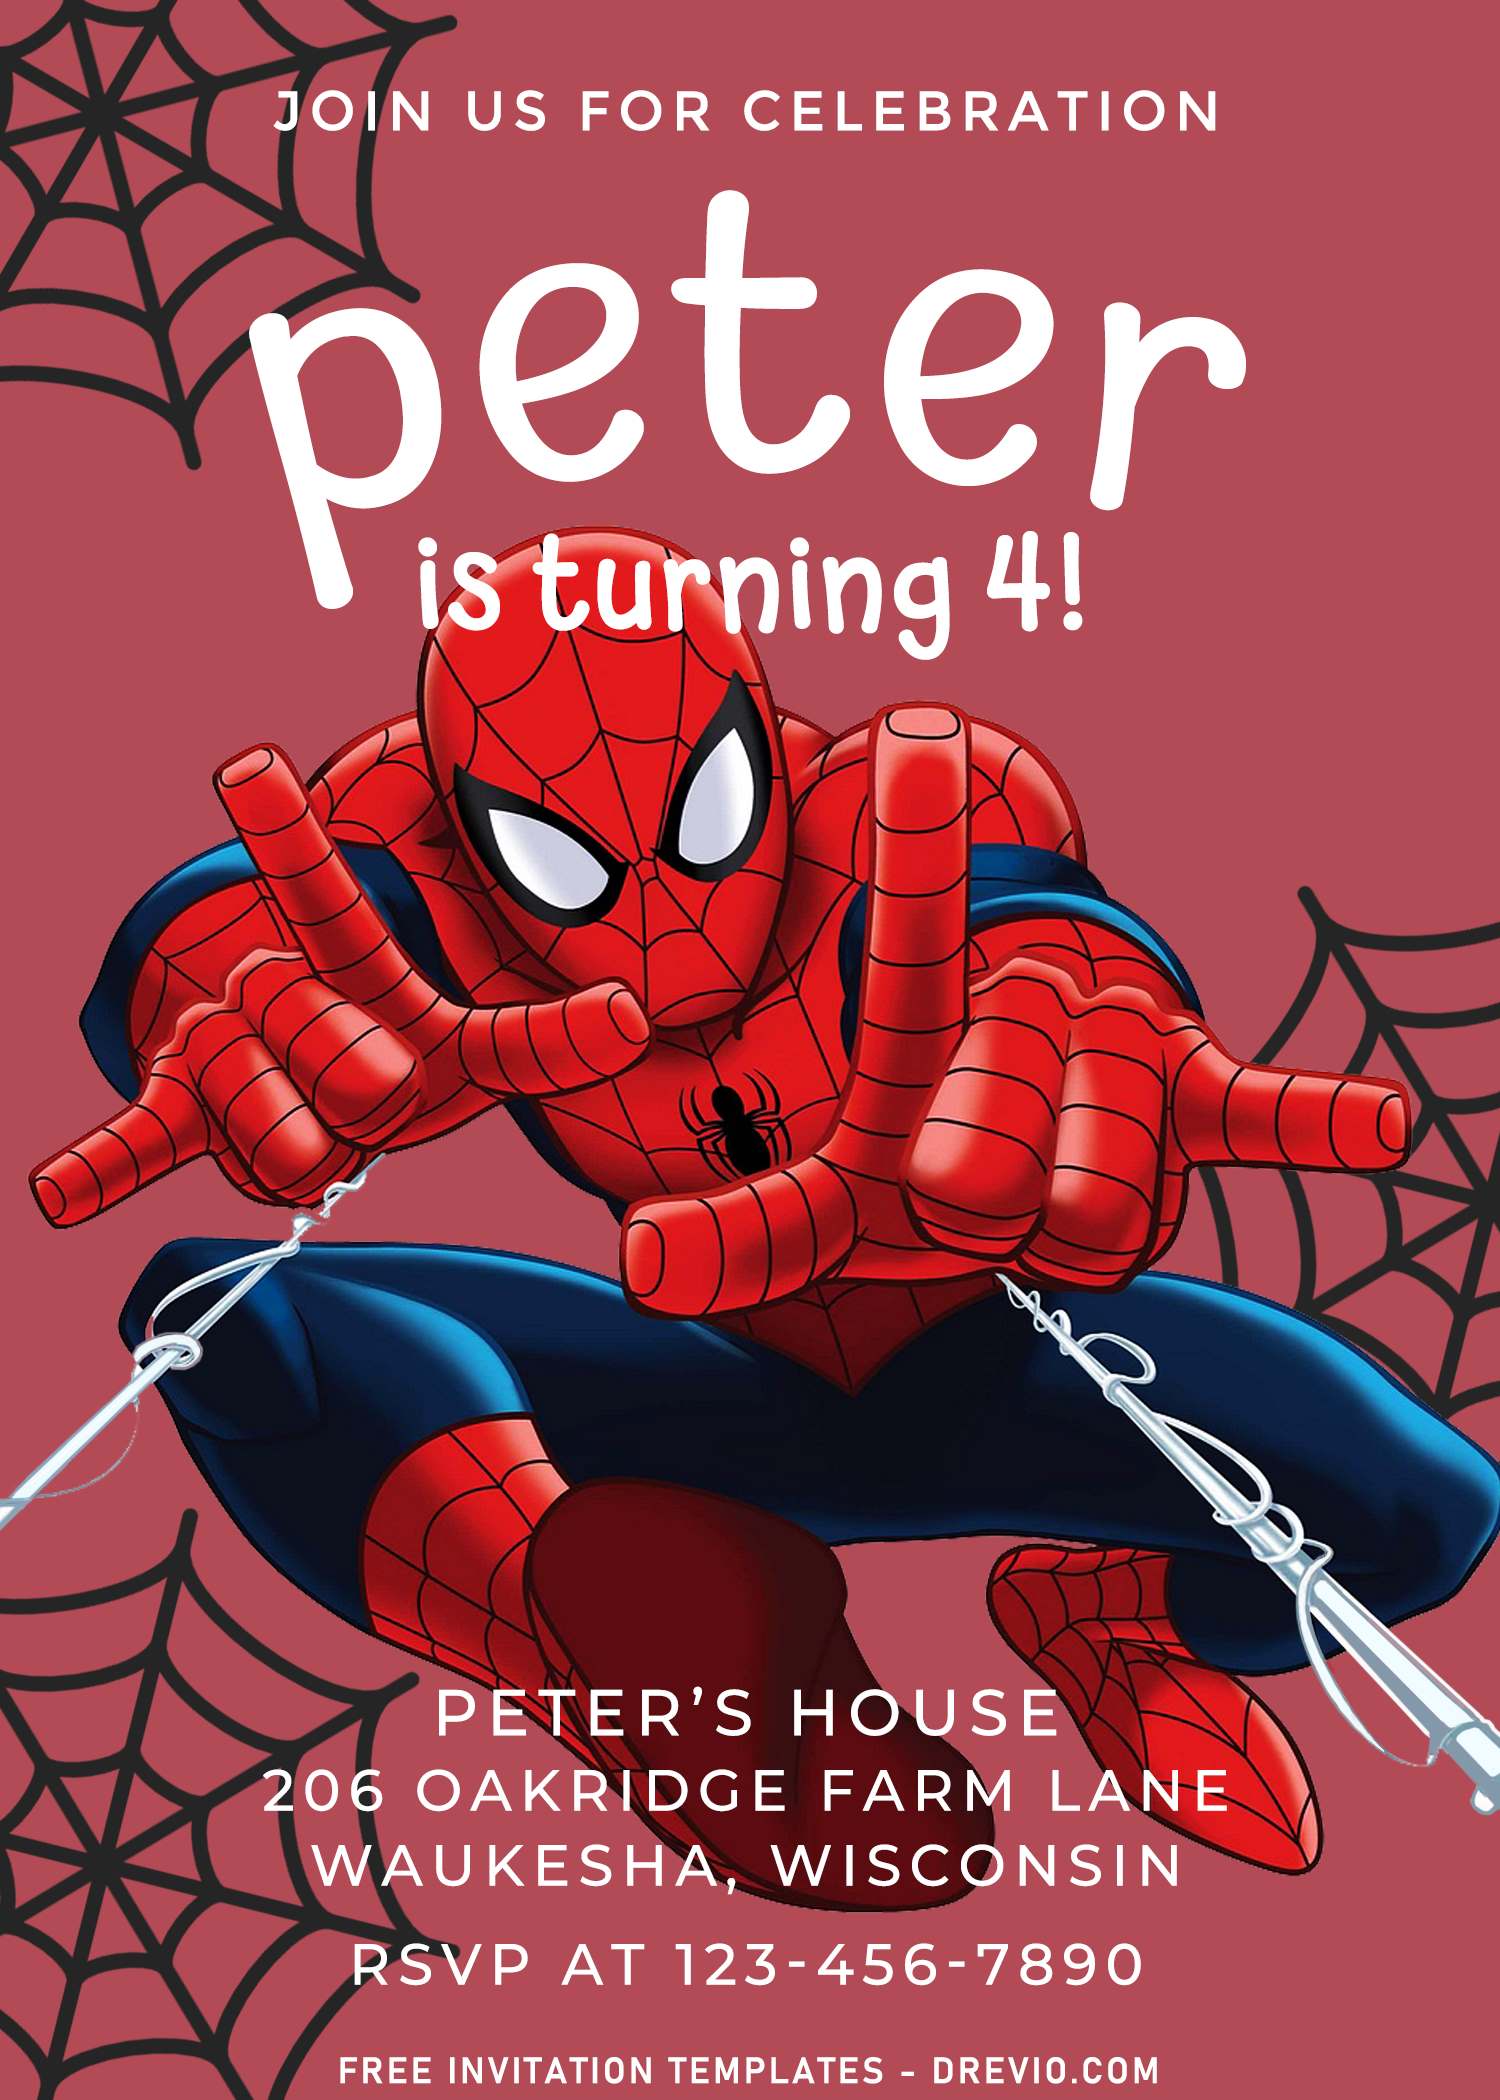 Bạn đang tìm kiếm thiết kế thẻ mời độc đáo và đẹp mắt cho bữa tiệc sinh nhật con trai mình? Hãy thử ngay mẫu thẻ mời Spiderman với thiết kế bắt mắt, tươi sáng và hứa hẹn sẽ làm hài lòng không chỉ bé mà cả khách mời của bạn. Hãy cùng xem hình chụp liên quan để cảm nhận thêm về sự độc đáo của mẫu thẻ mời này.